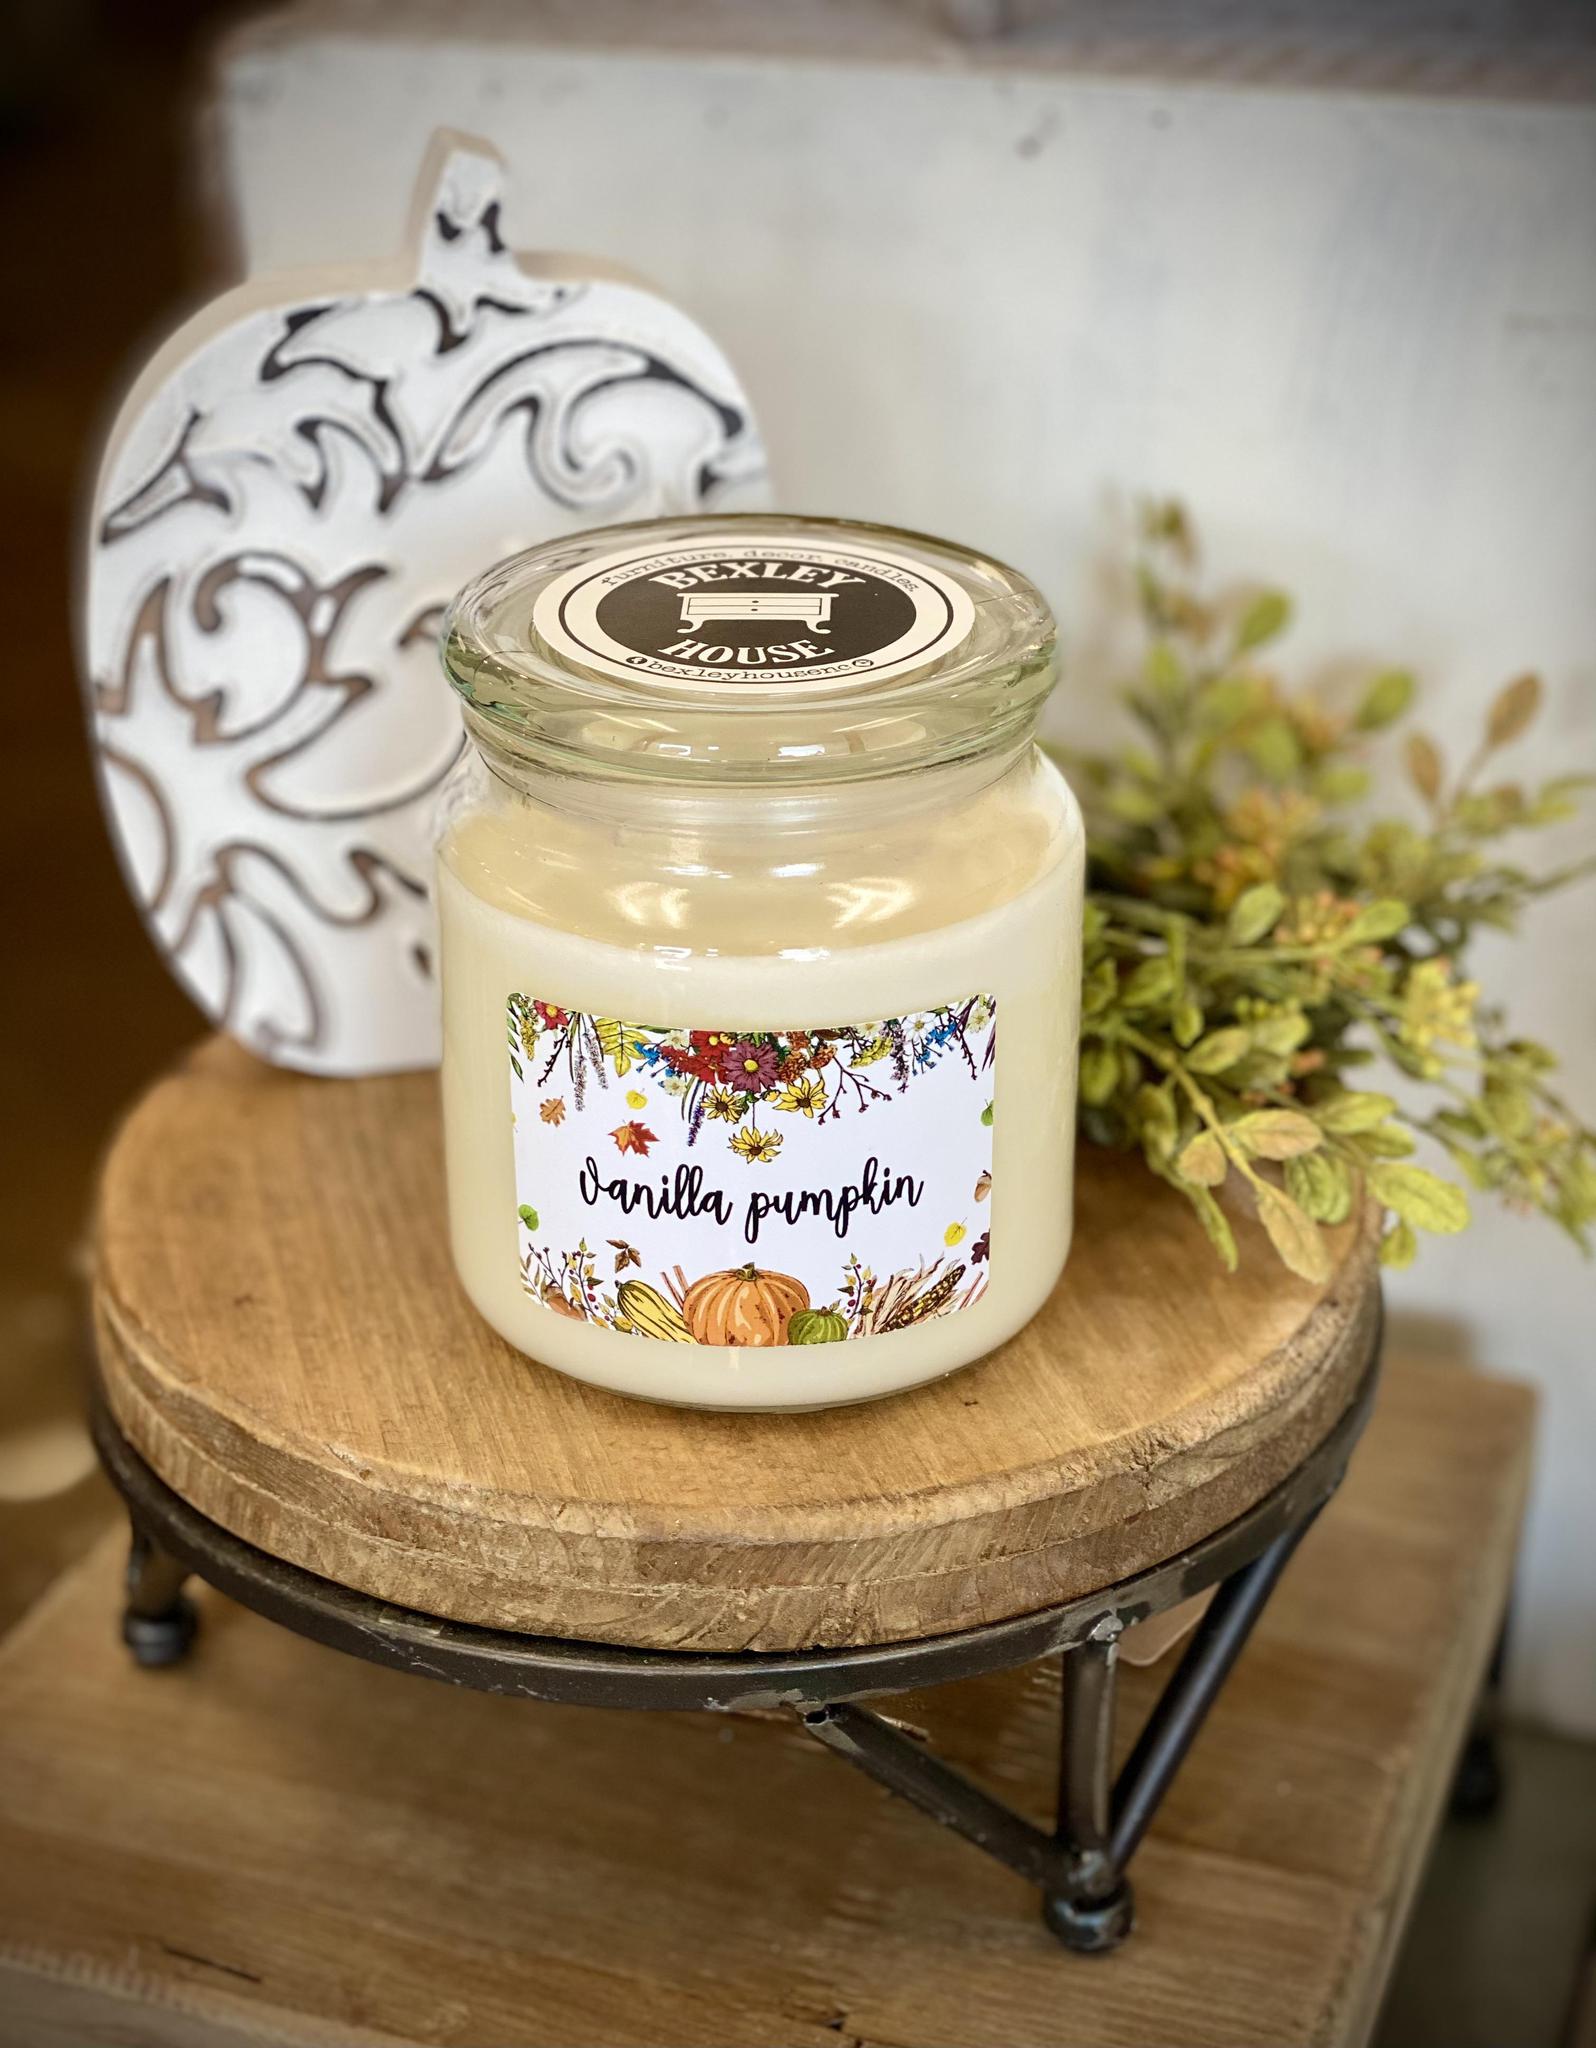 Bexley House 16oz Apothecary Candle - Vanilla Pumpkin